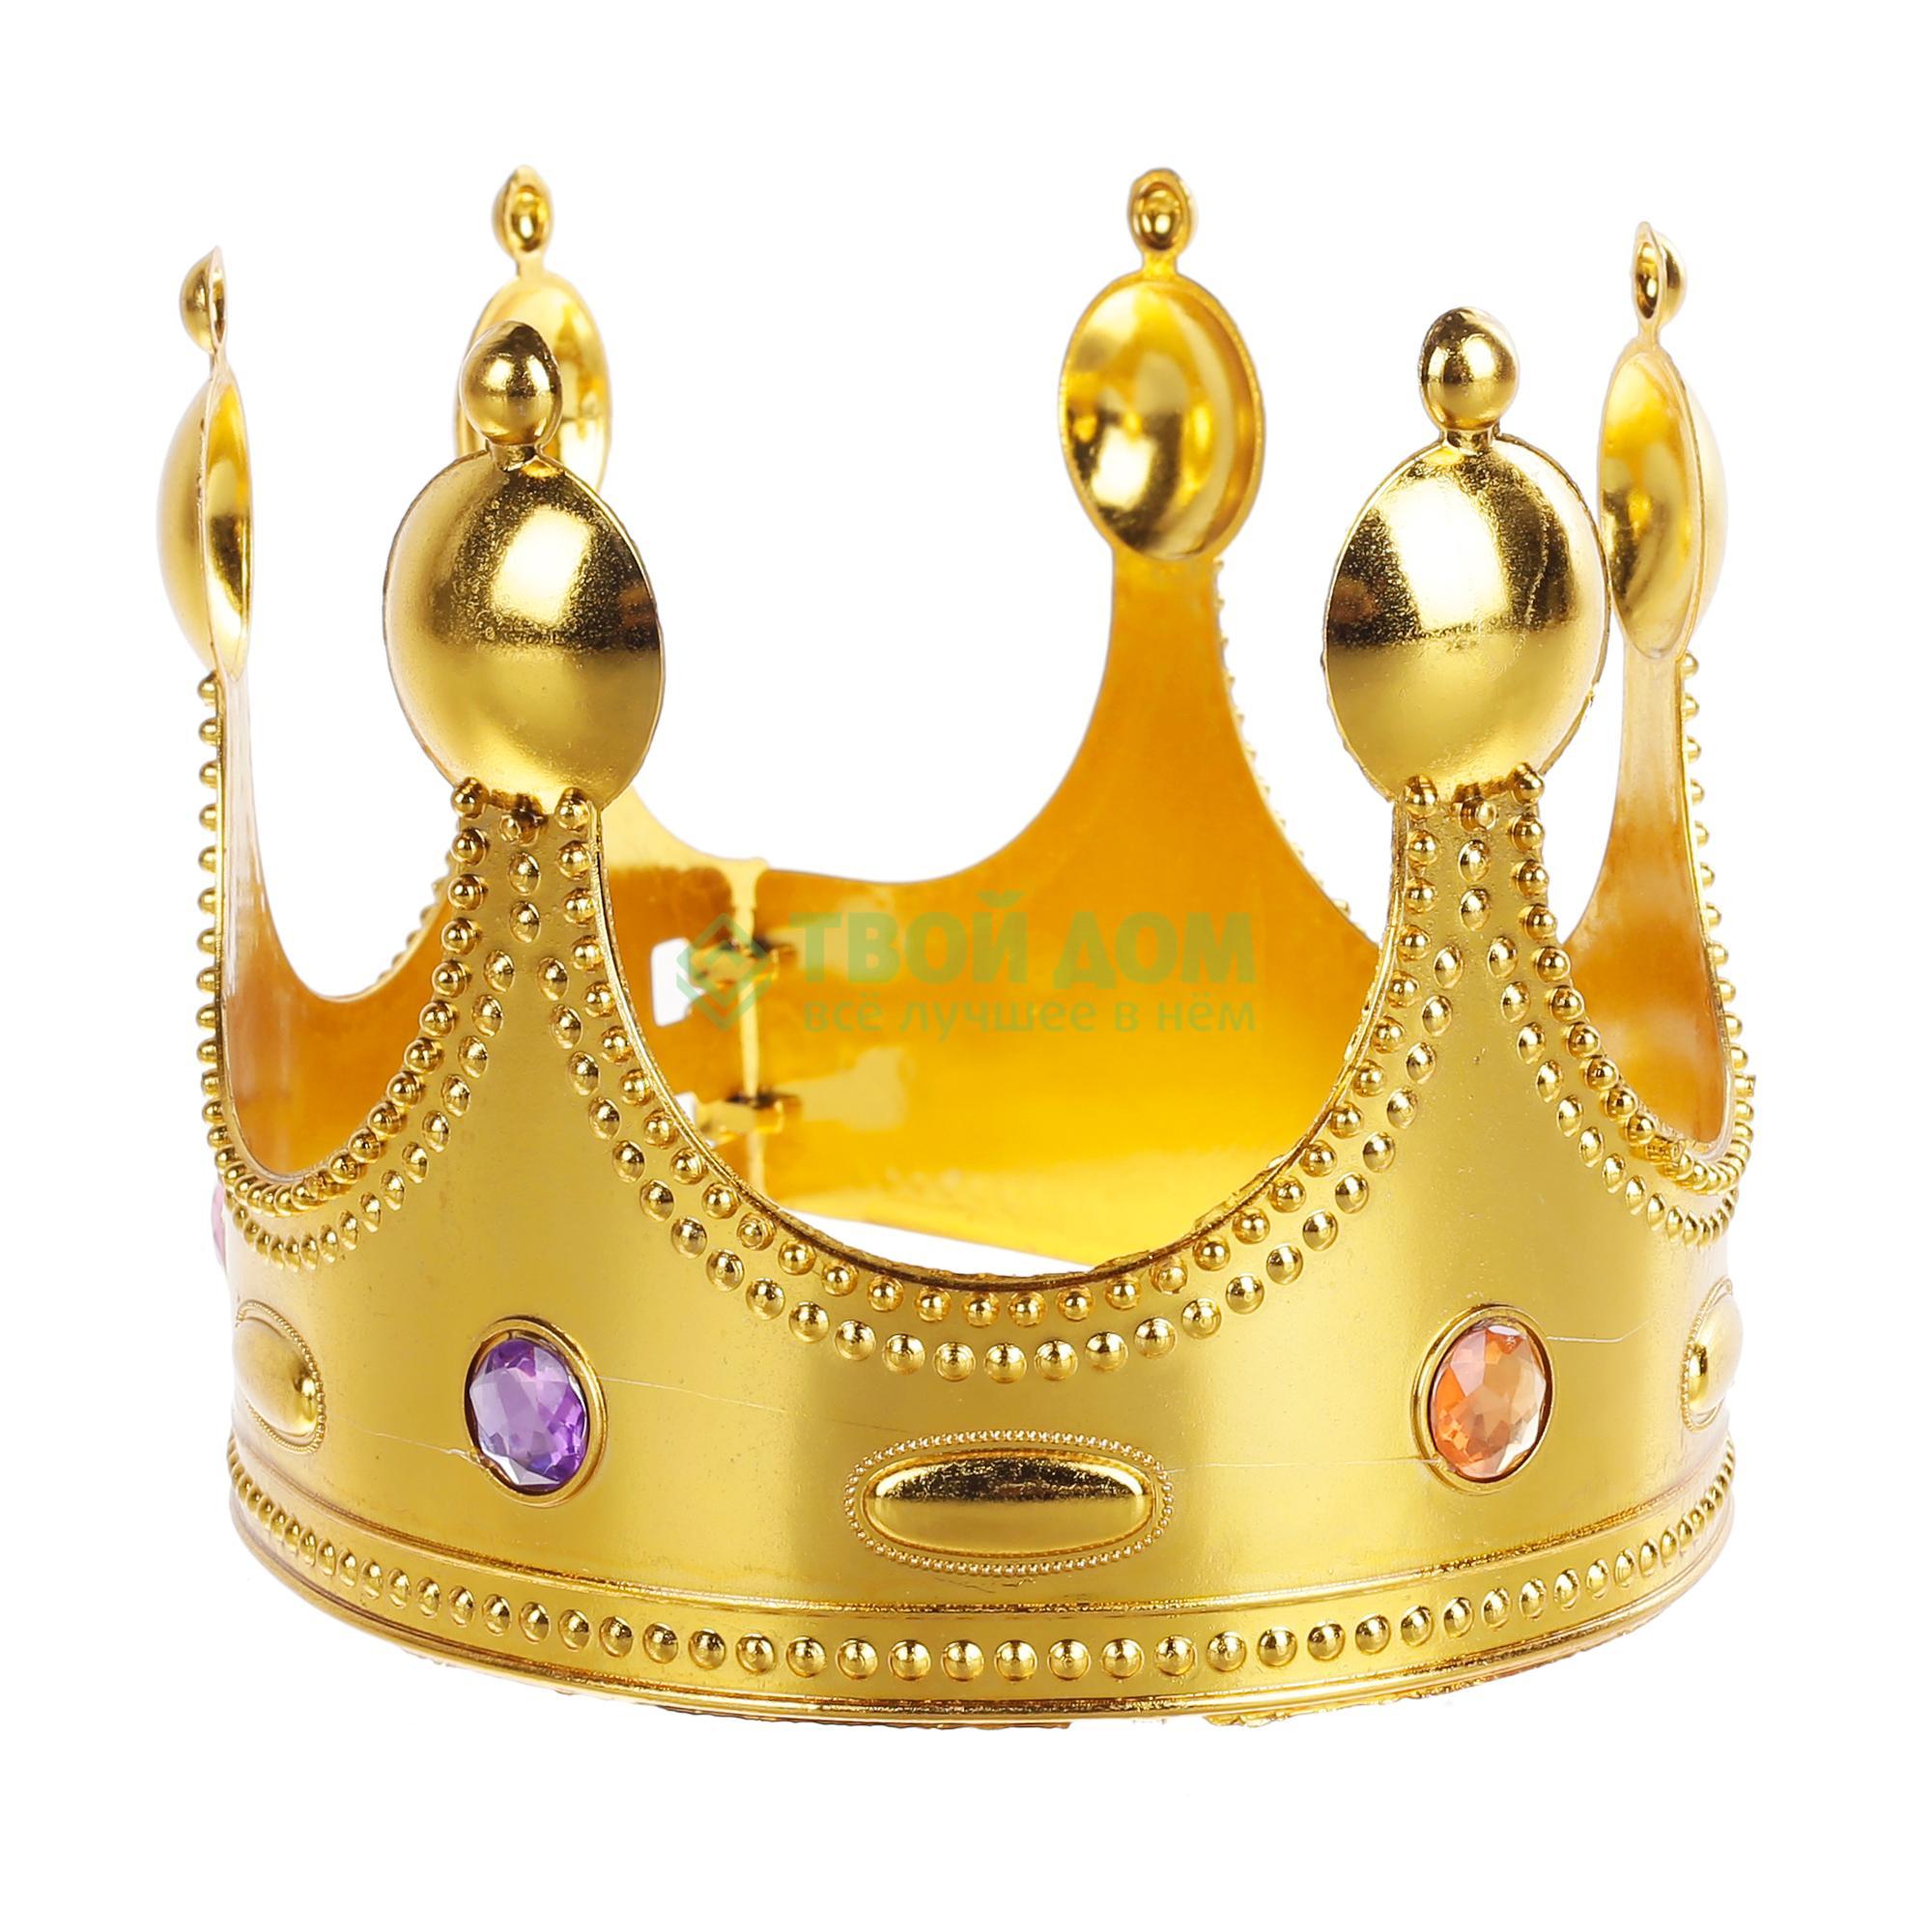 Артэ-грим Корона царя серебристый - фото 1